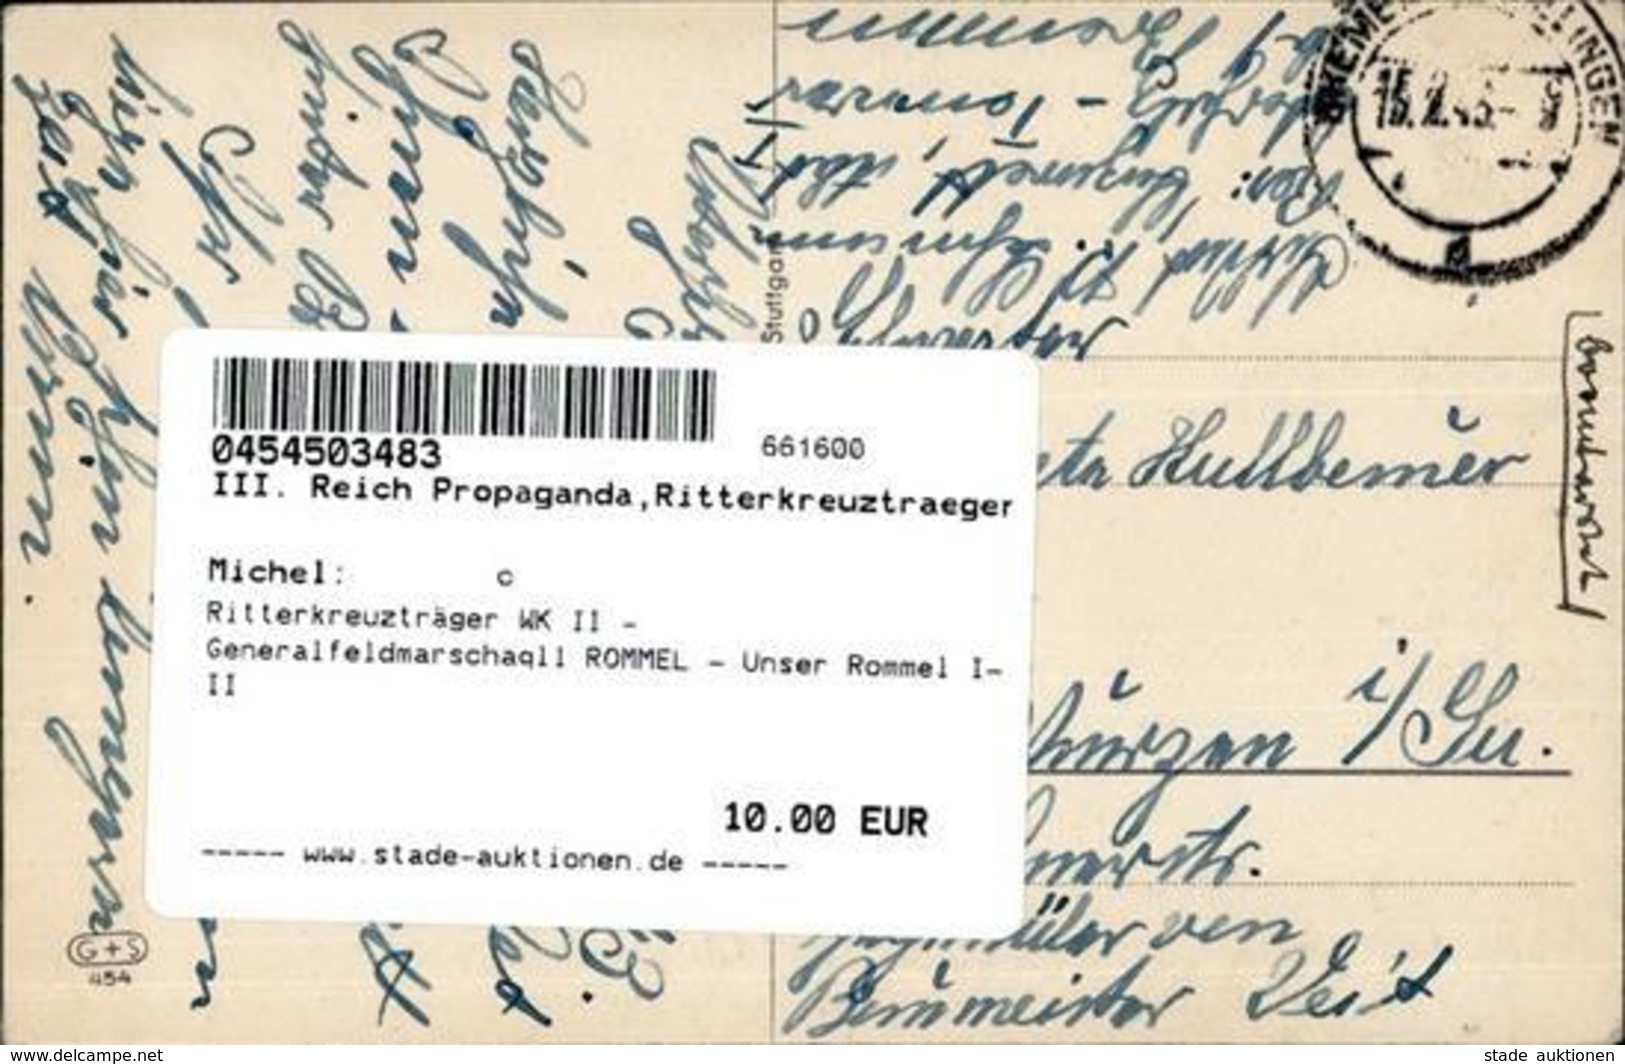 Ritterkreuzträger WK II - Generalfeldmarschaqll ROMMEL - Unser Rommel I-II - Guerra 1939-45